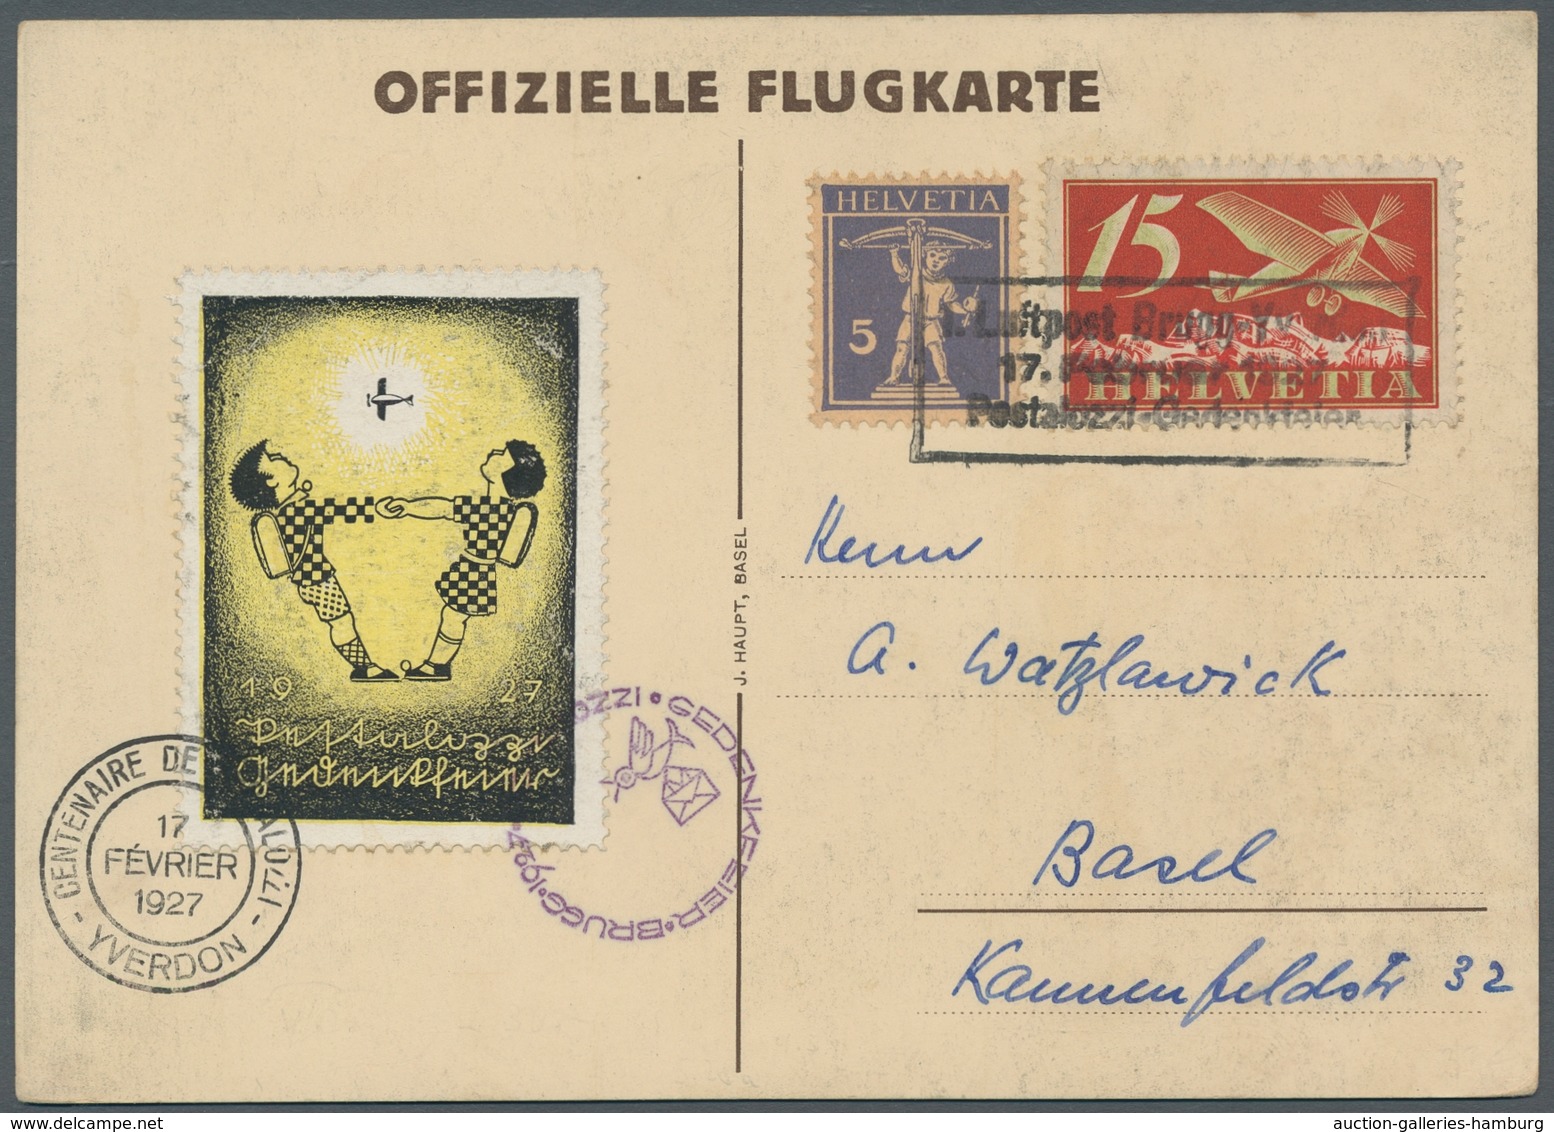 Schweiz: 1927, Pestalozzi-Gedenkflug Brugg-Yverdon, Offizielle Flugkarte Mit Farbiger Vignette Und F - Used Stamps